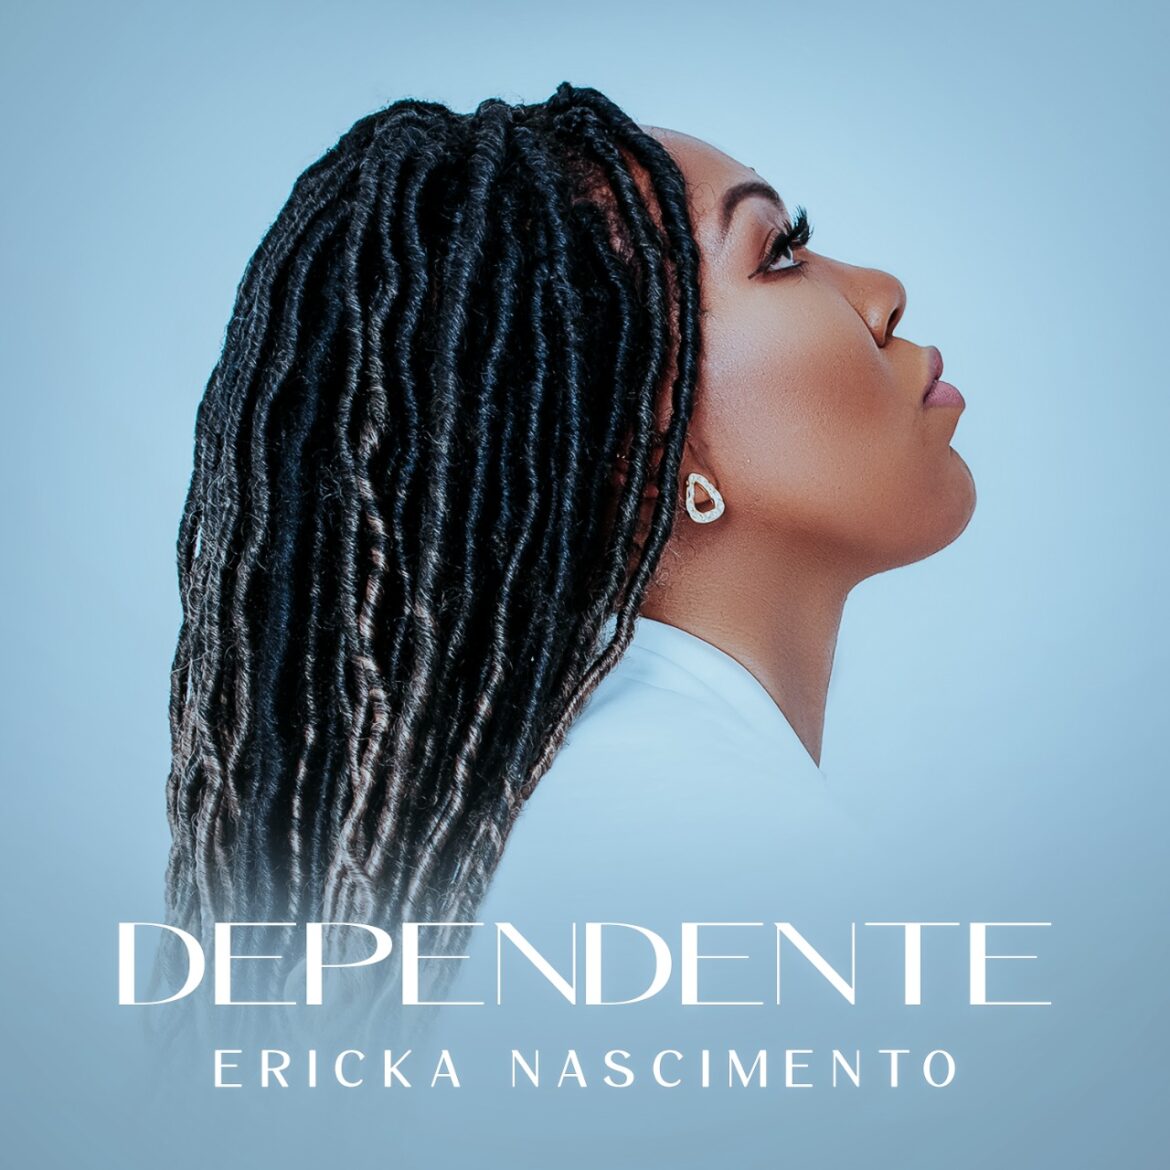 Ericka Nascimento declara cantando, totalmente “Dependente” de Deus